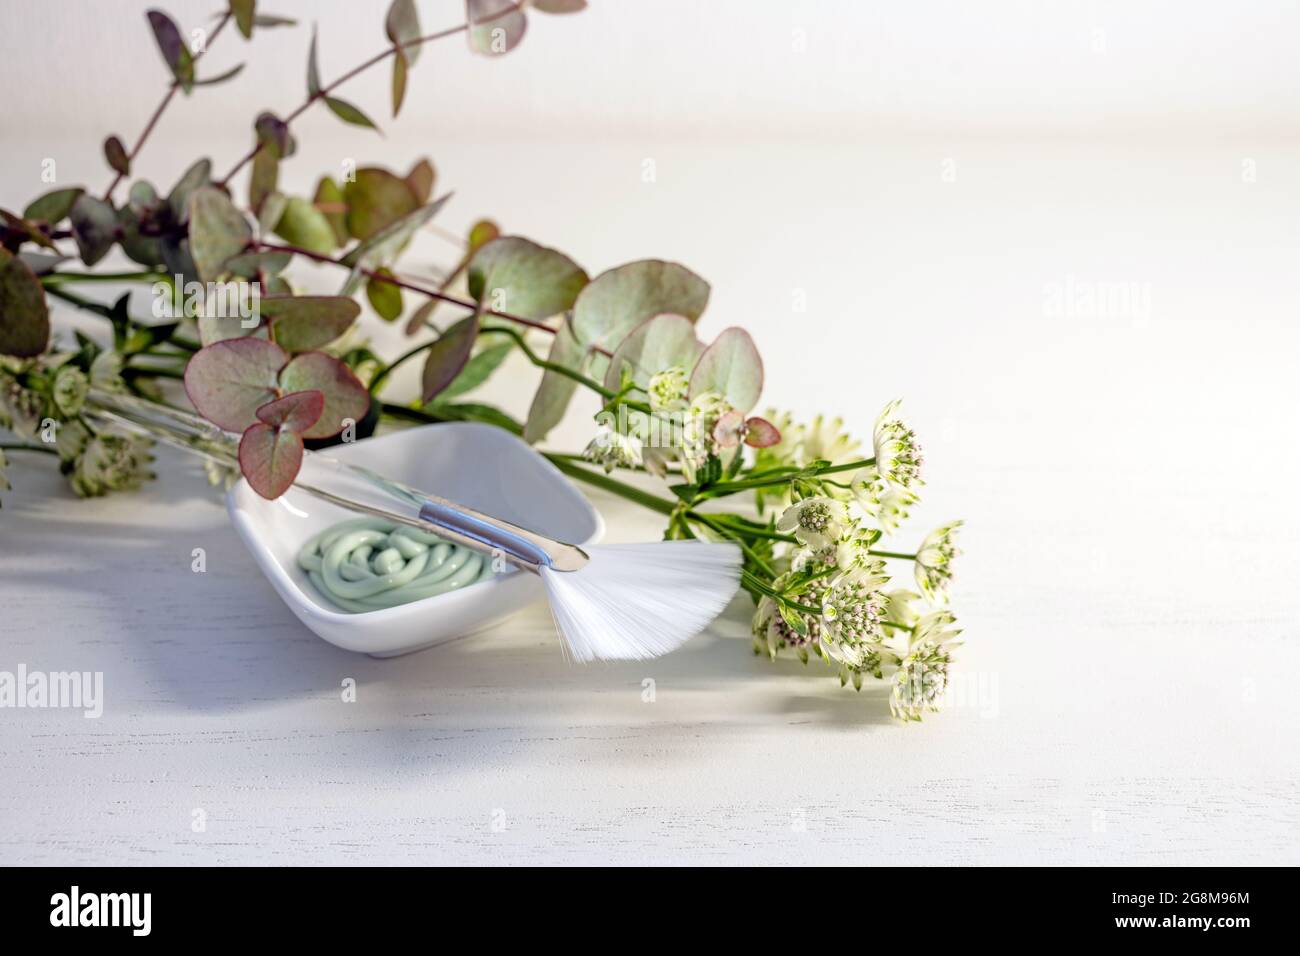 Kosmetische Feuchtigkeitsmaske in einer kleinen Schüssel mit Pinsel und ein paar grünen Blumenästen auf einem hellen Hintergrund mit Kopierraum, ausgewählter Fokus, schmal d Stockfoto